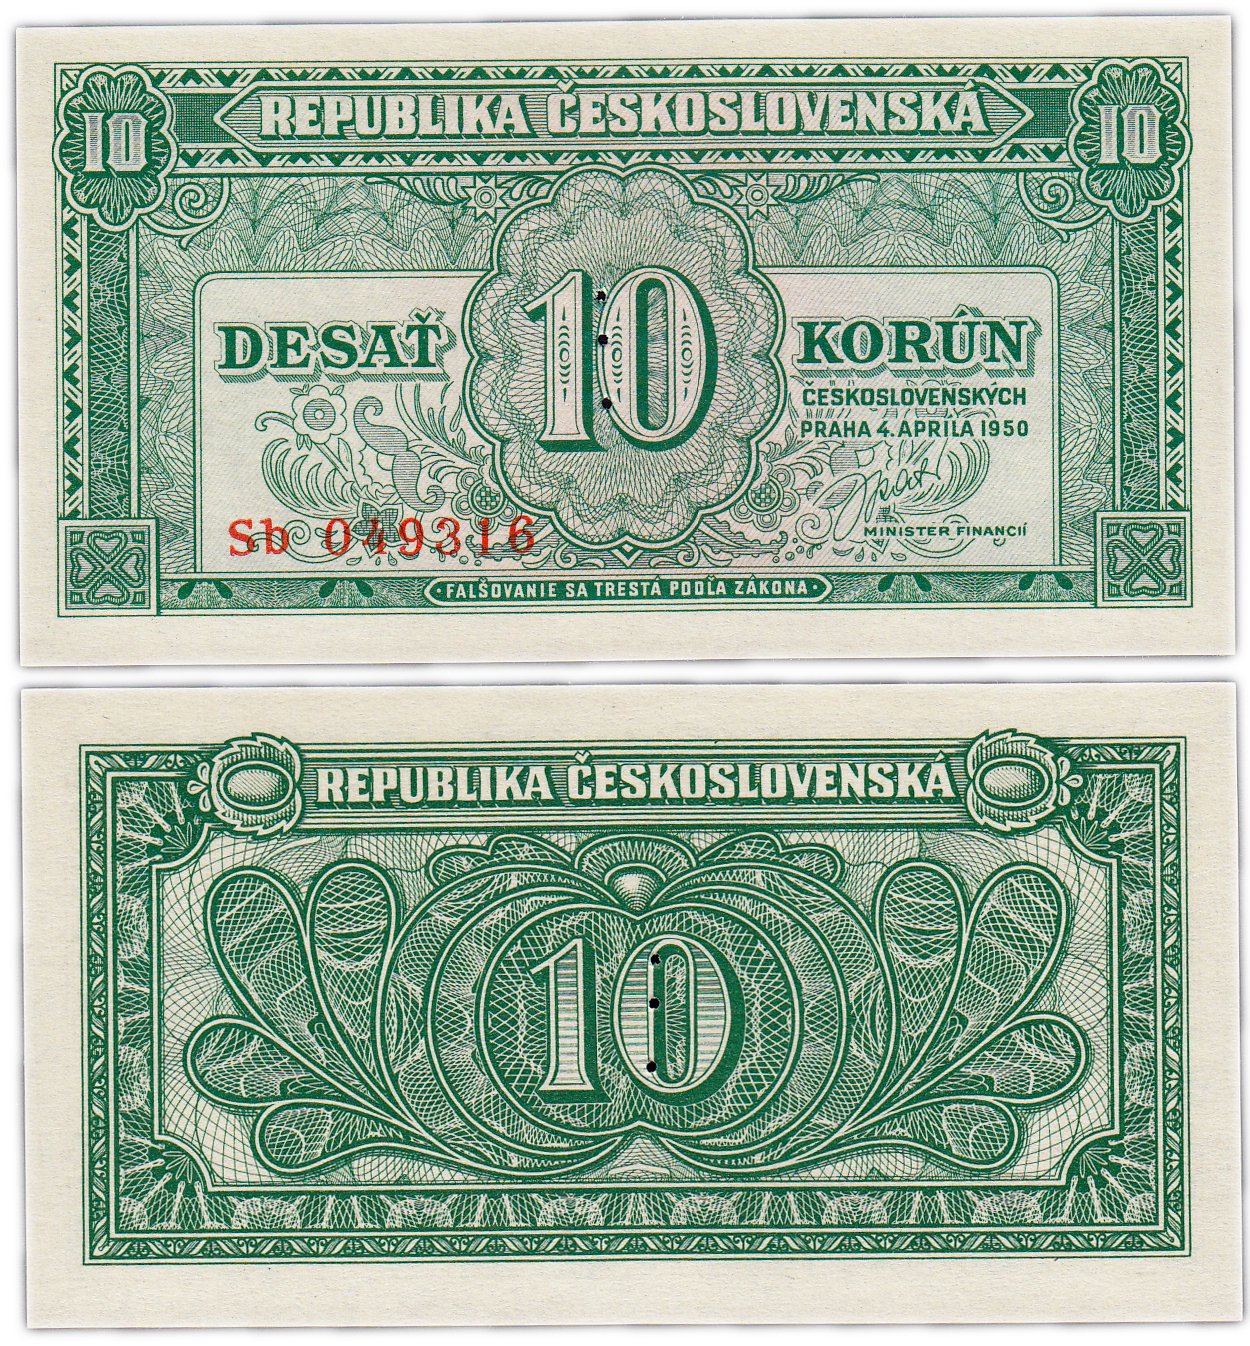 Купить в чехословакии. Чехословакия 10 крон.. Чехословацкие банкноты. Чехословацкие кроны банкноты. Купюры 1945 года.